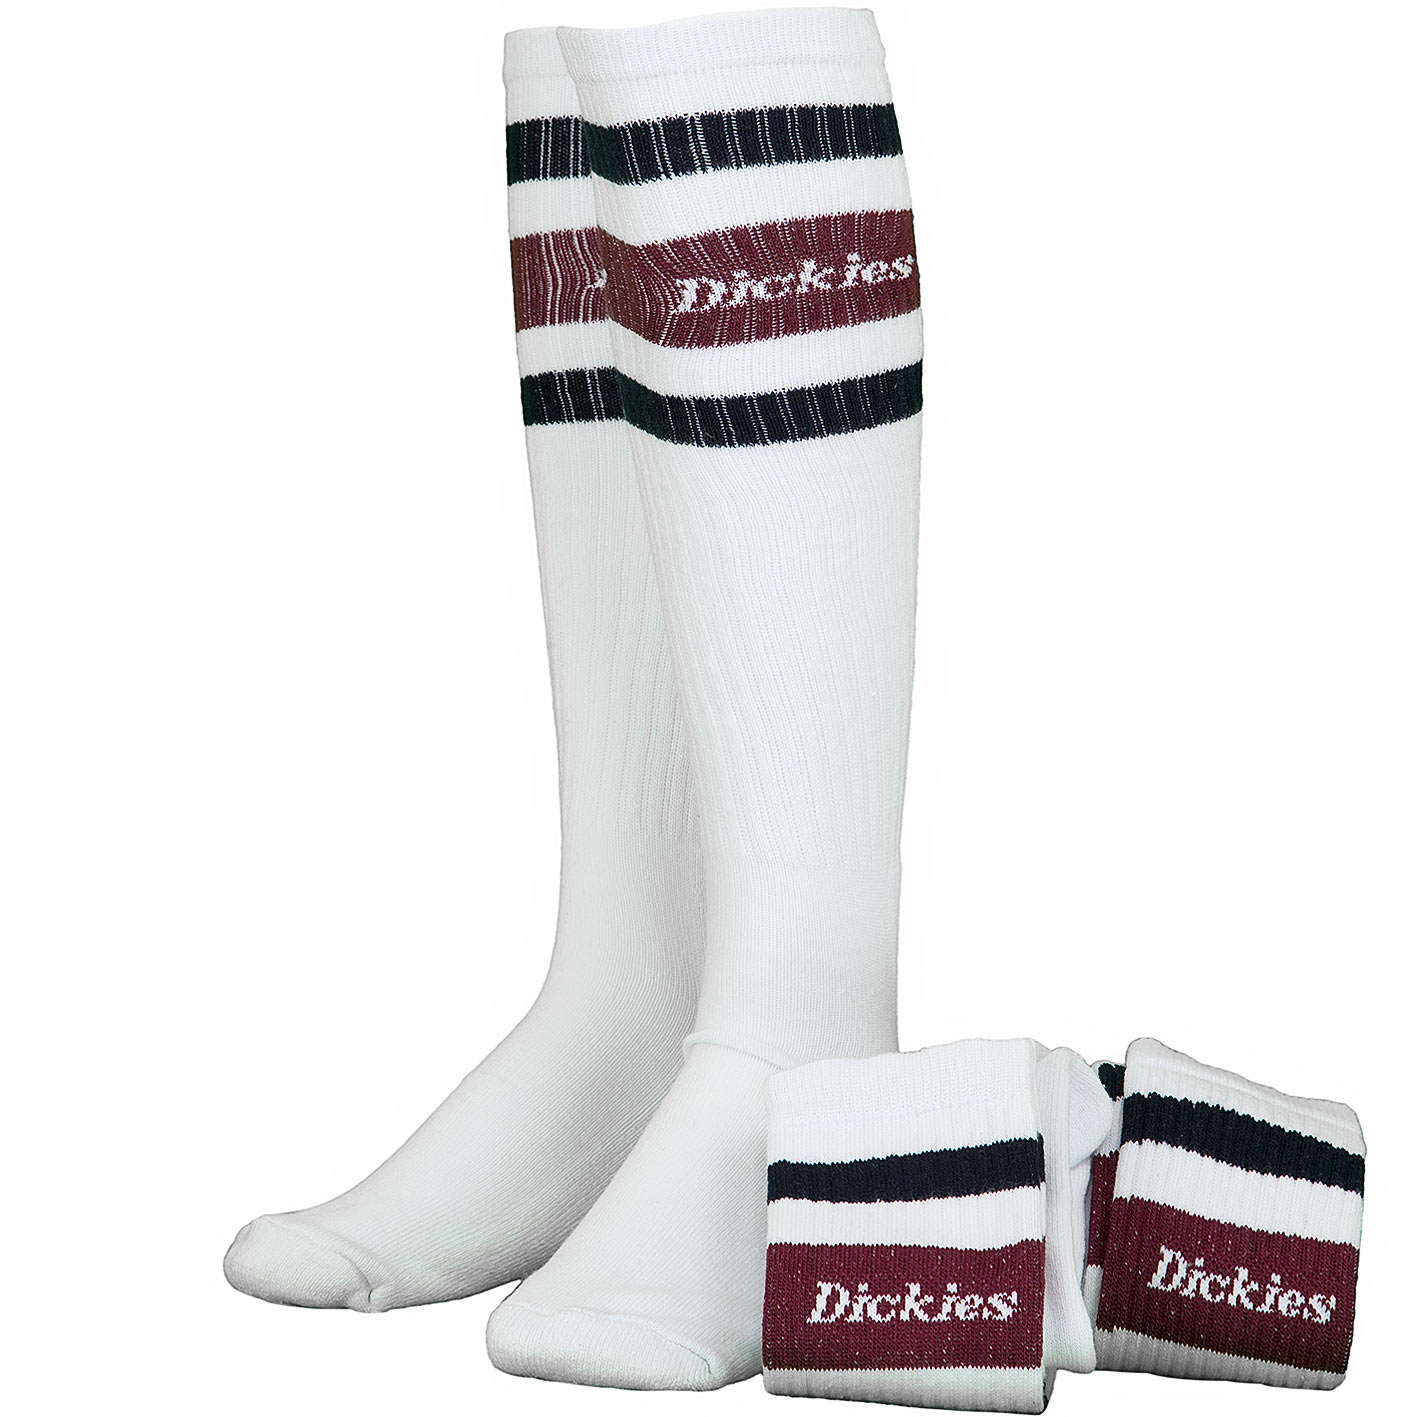 ☆ Dickies Socken Kirkvill maroon - hier bestellen!